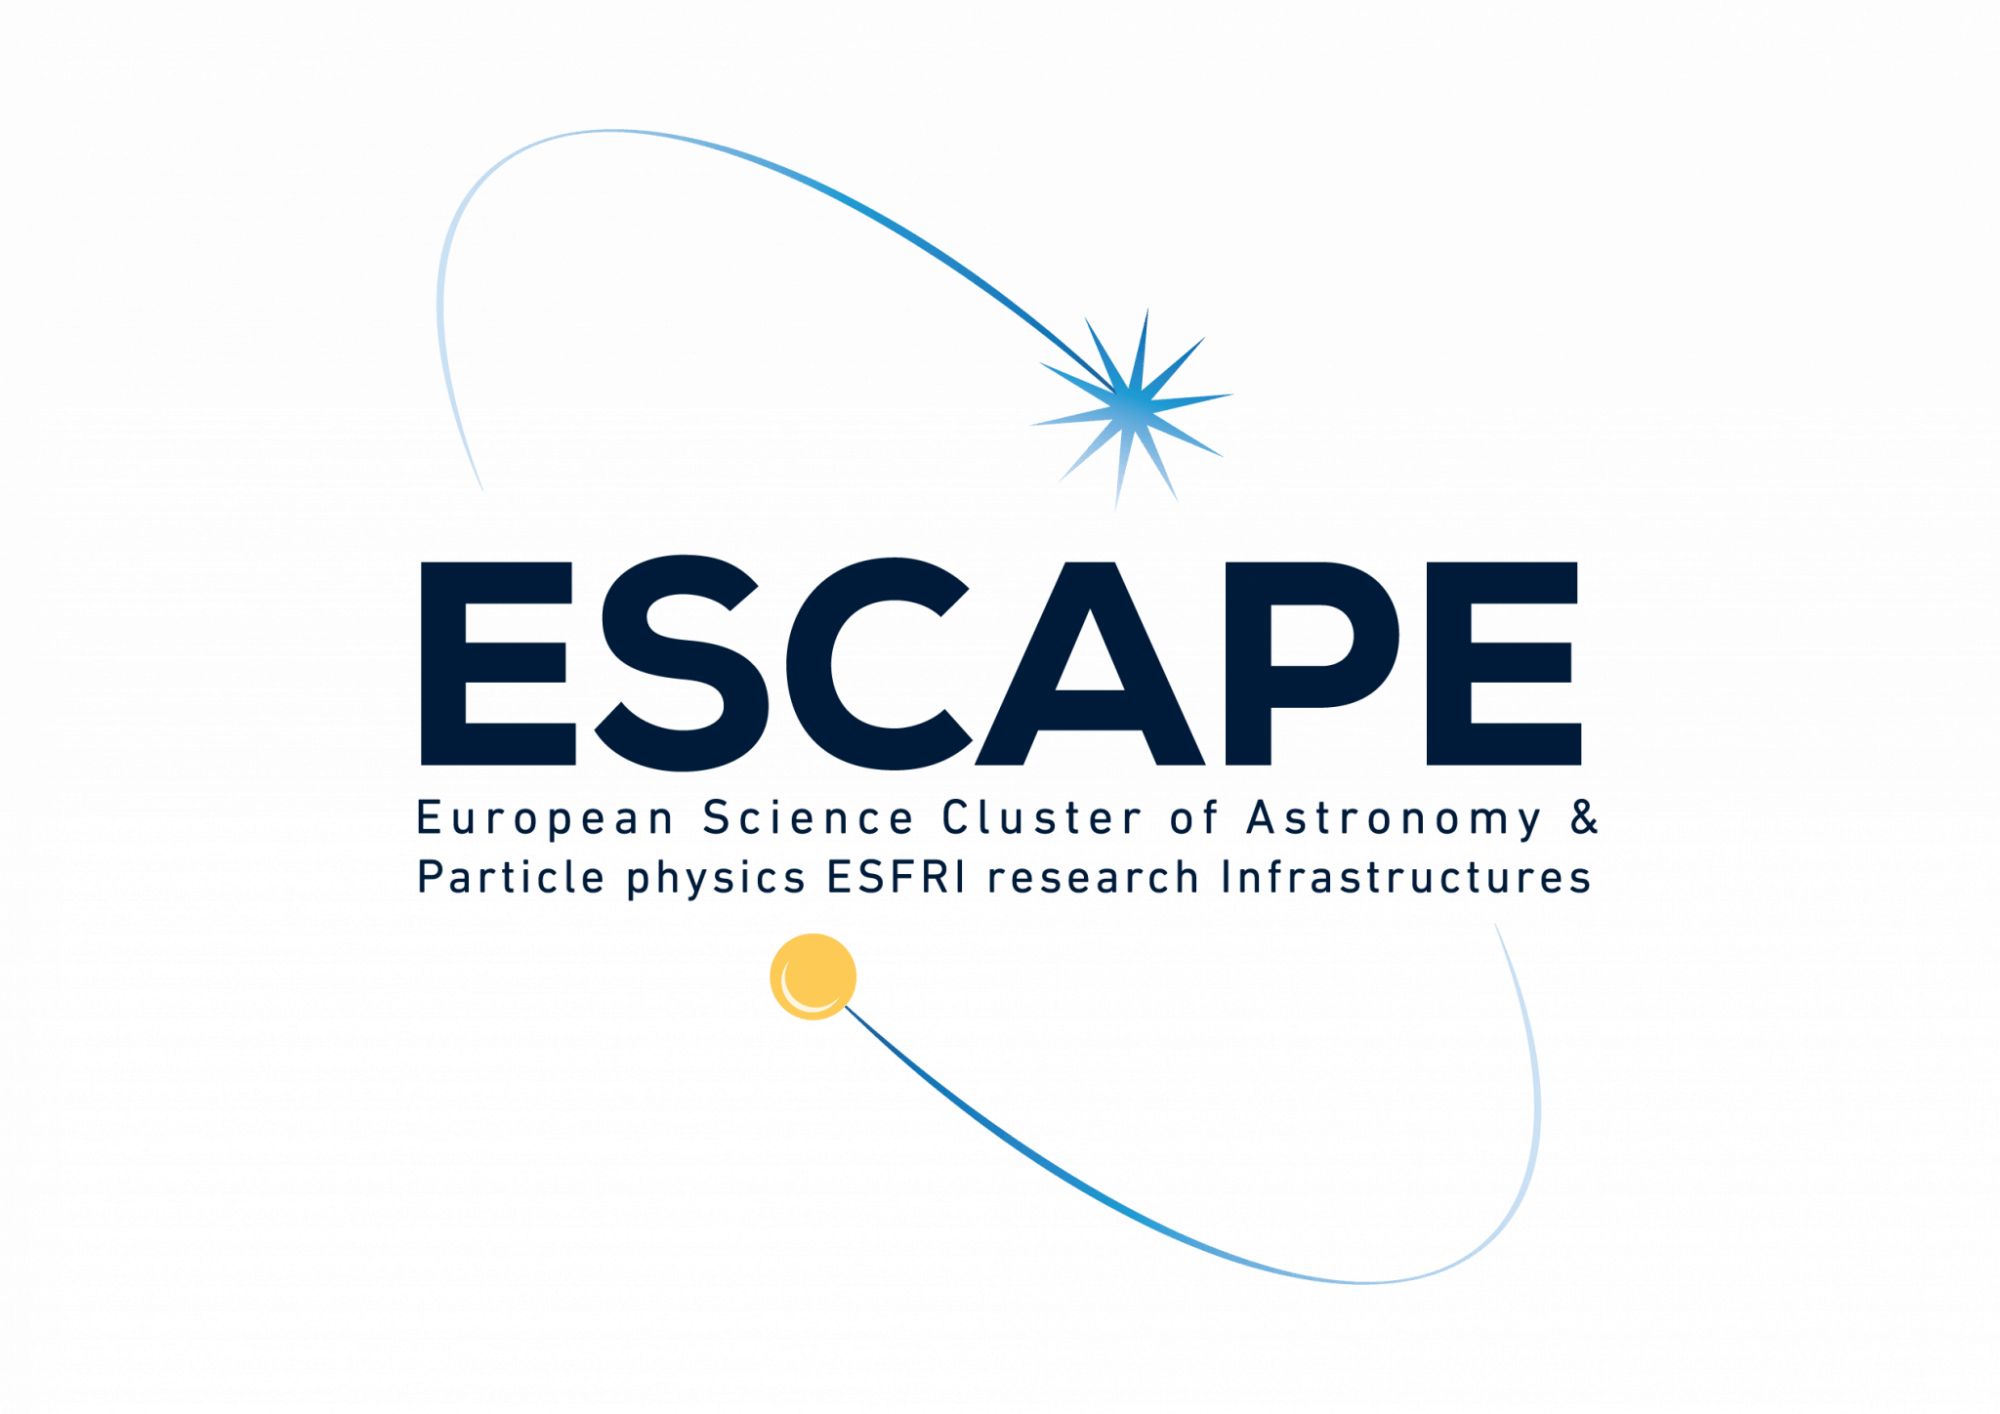 Escape Logo - 03-Escape-logo - Cherenkov Telescope Array